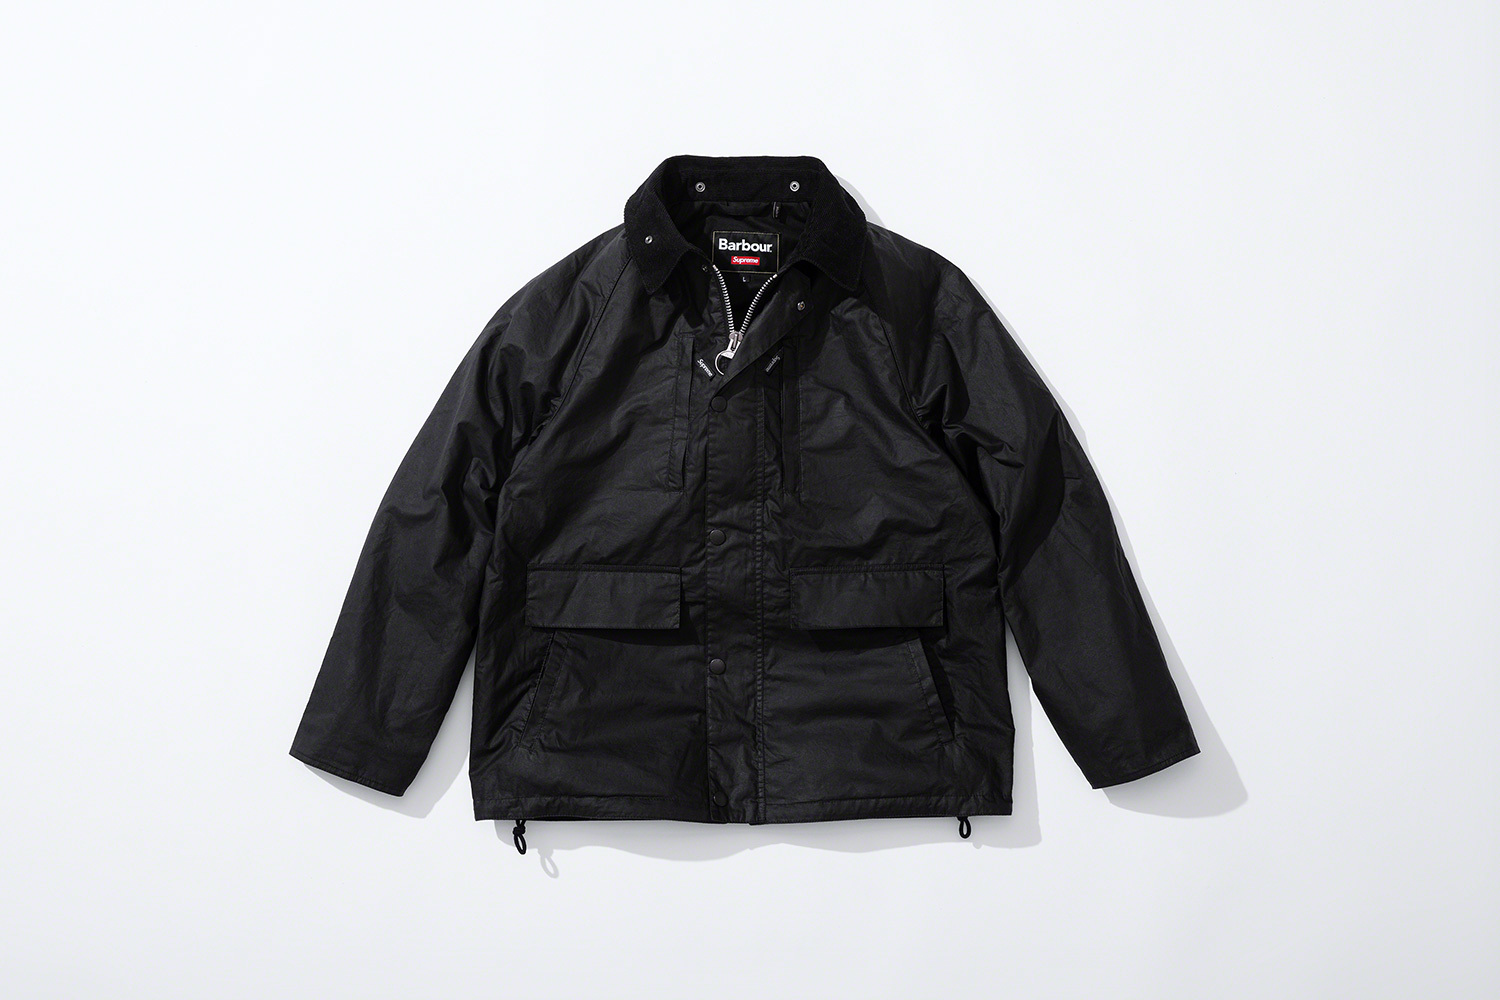 черная вощеная куртка коллекция supreme barbour весна 2020